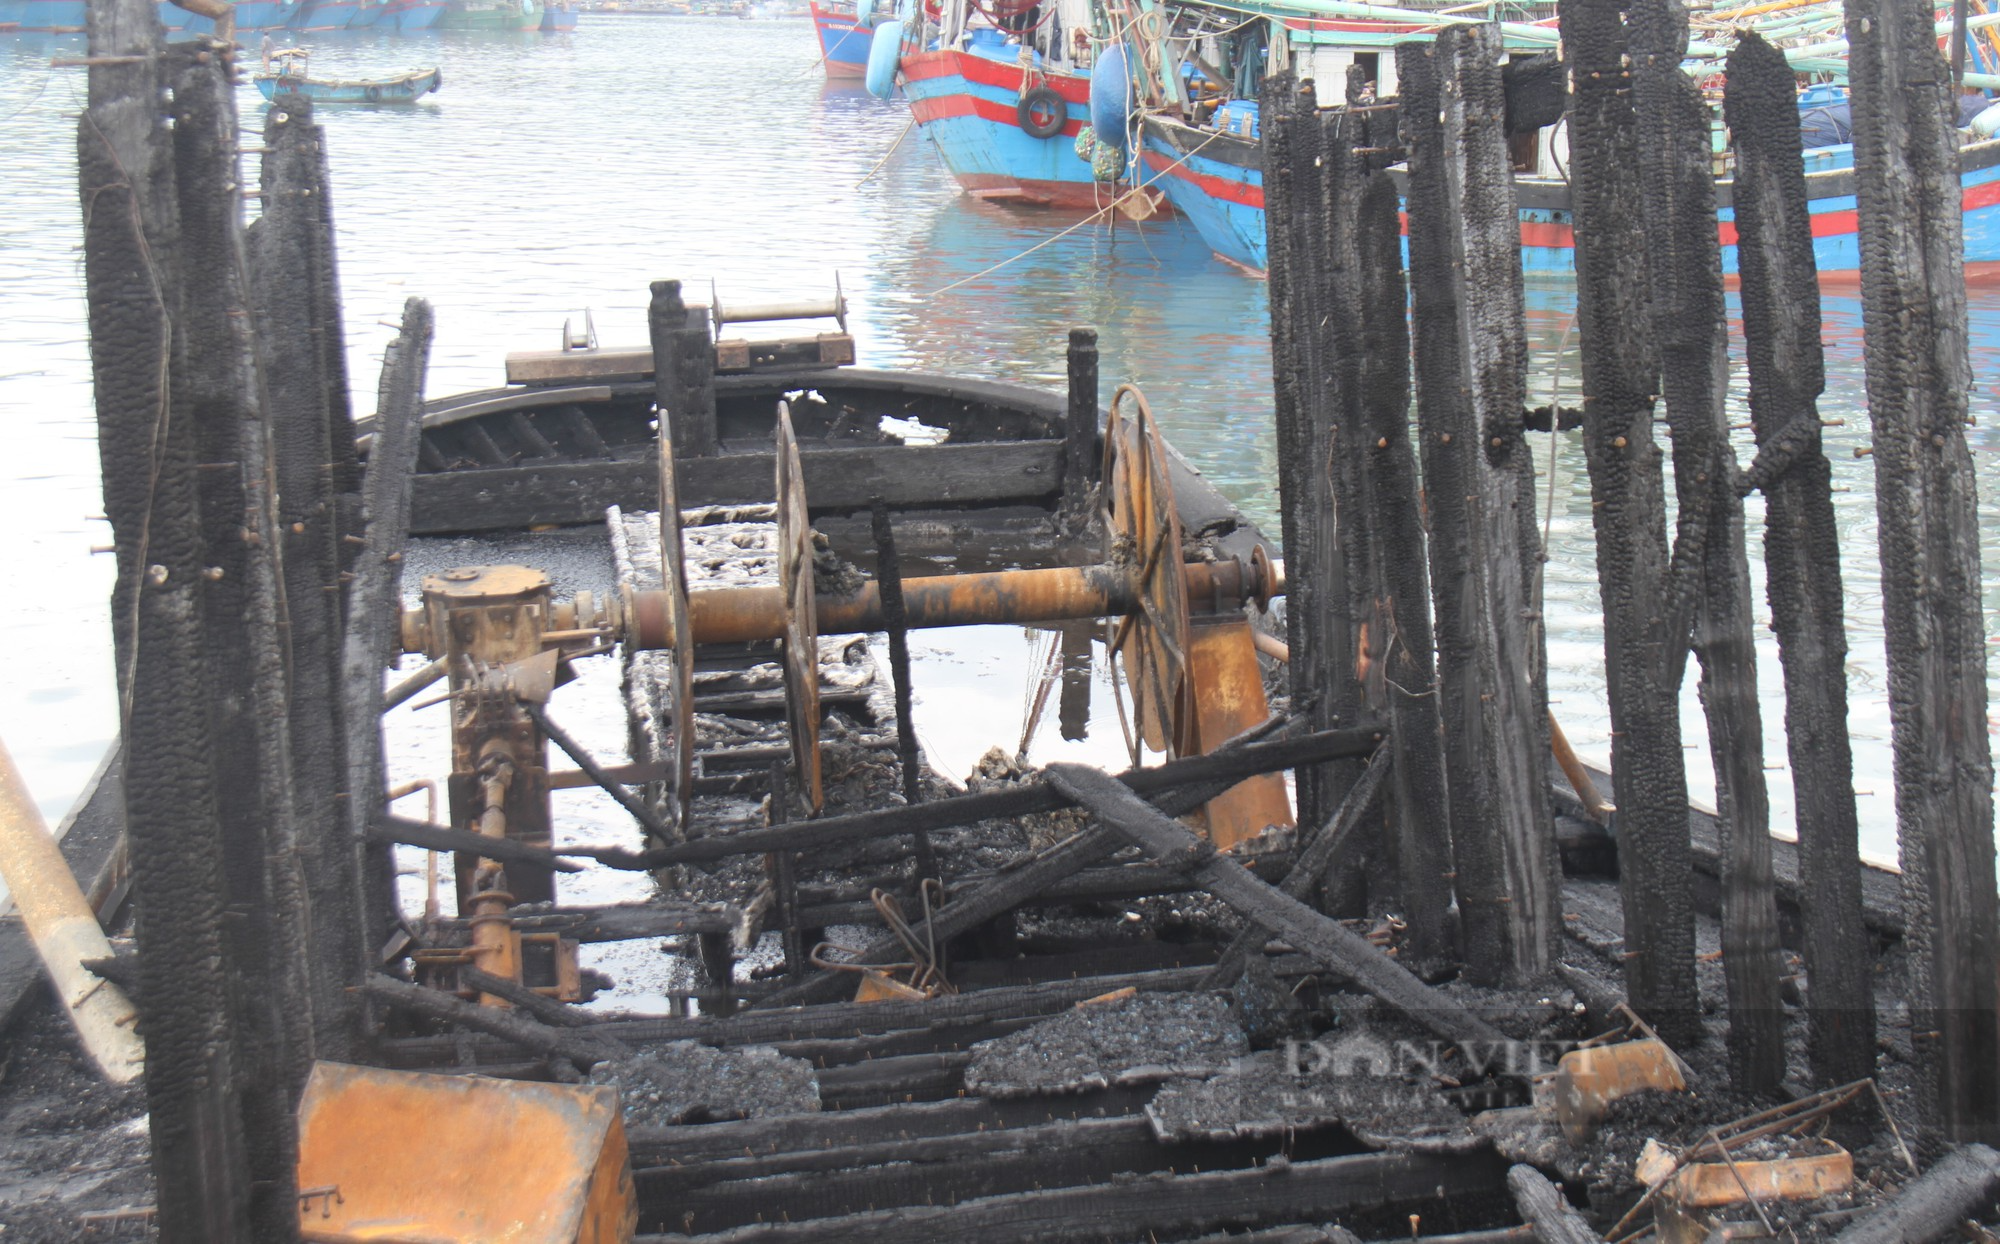 Vụ hàng loạt tàu cá bị nhấn chìm trong biển lửa: Chủ tàu hoảng loạn, trắng tay sau vụ hỏa hoạn kinh hoàng - Ảnh 5.